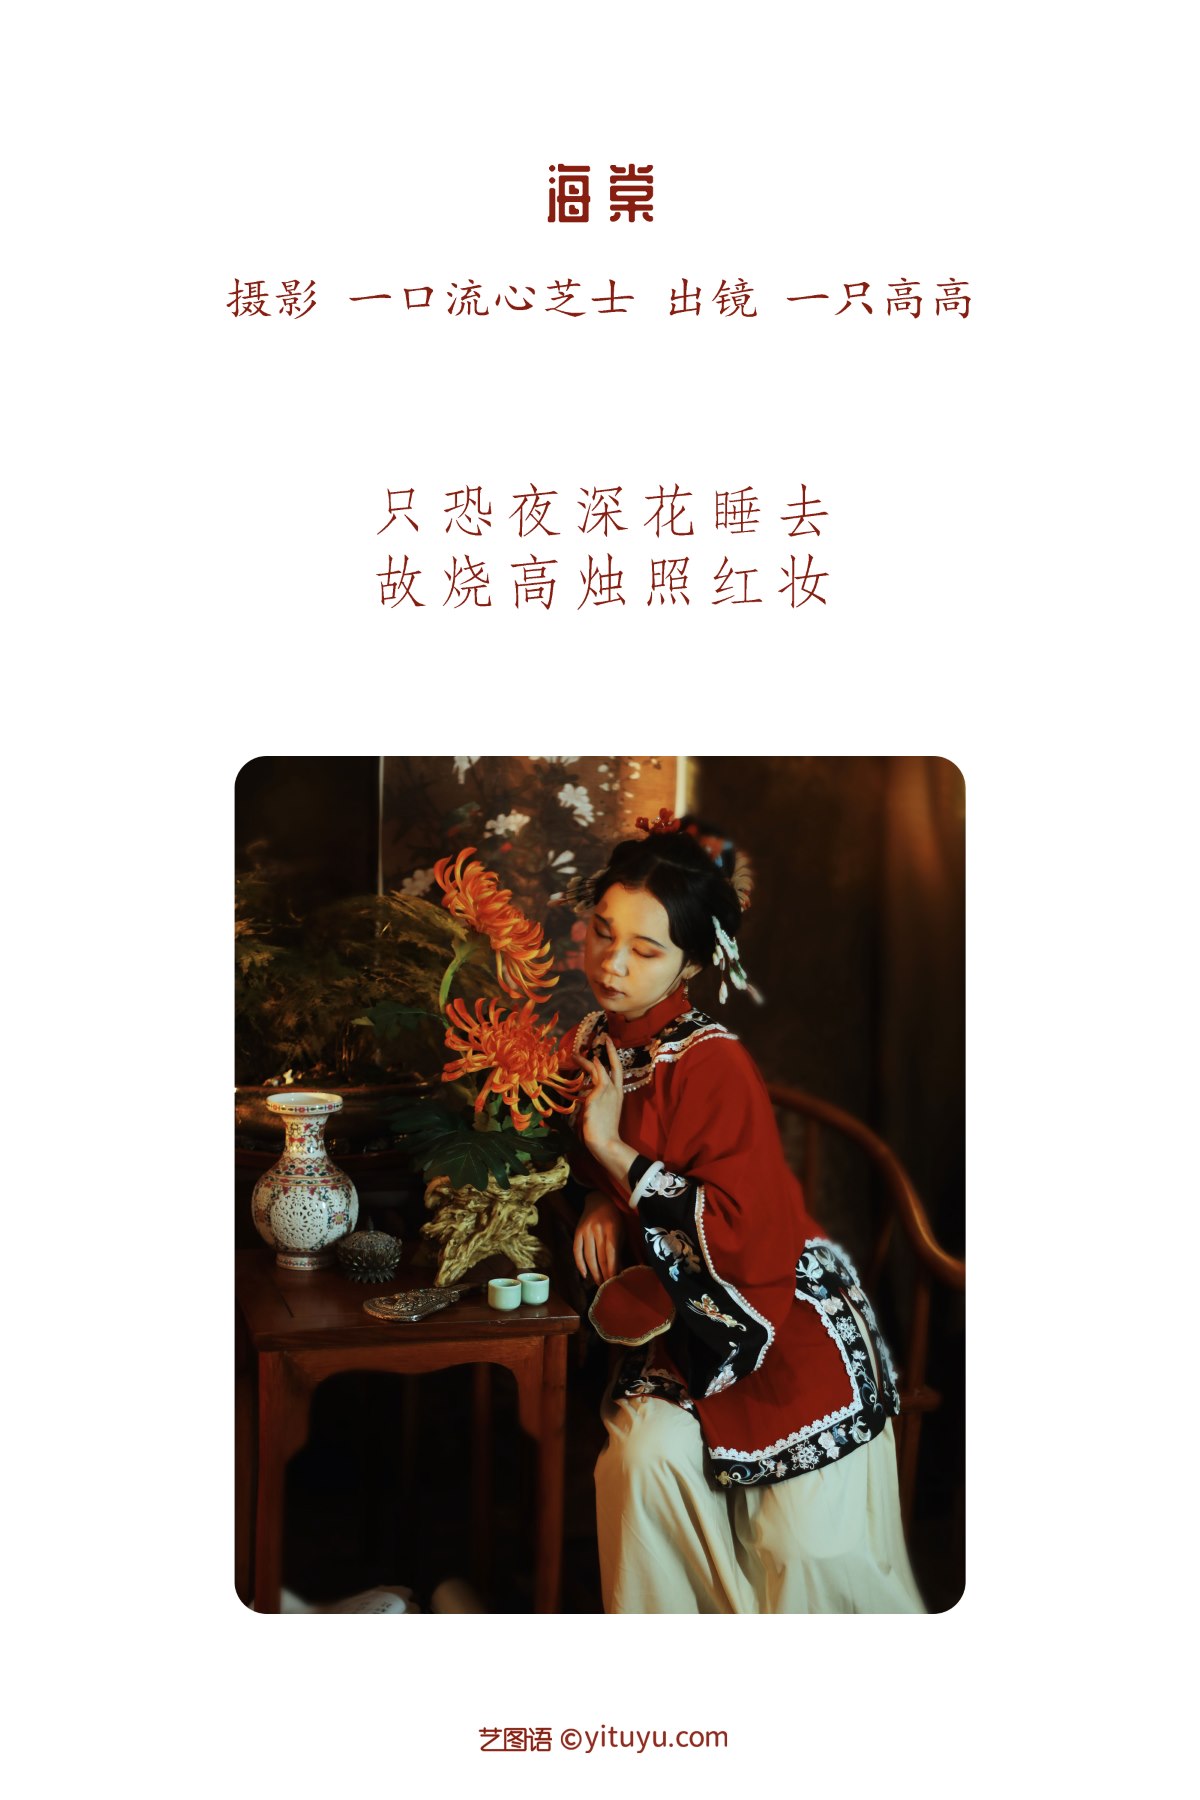 YiTuYu艺图语 Vol 2275 Yi Zhi Gao Gao 0001 5079491795.jpg